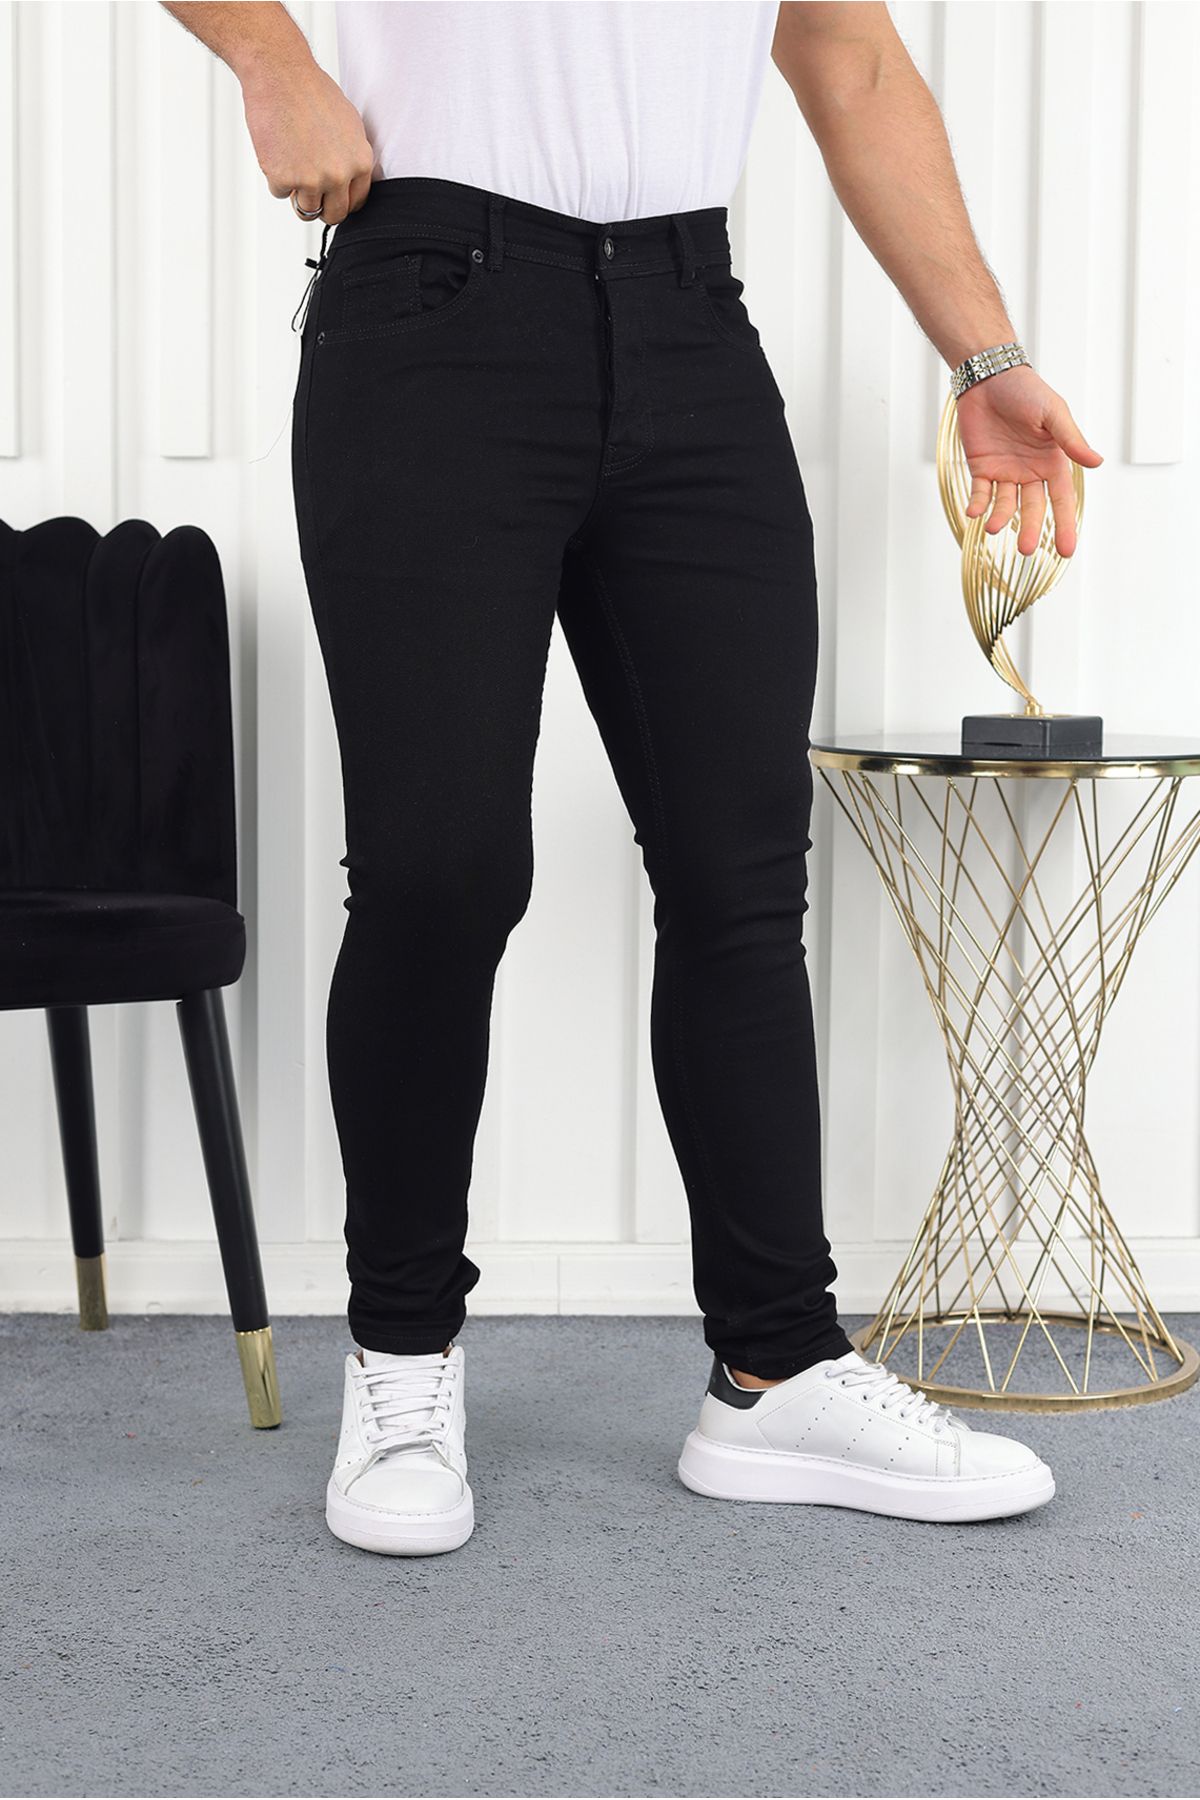 BYFUQQA Erkek Düz Siyah Reaktif Slimfit Jeans